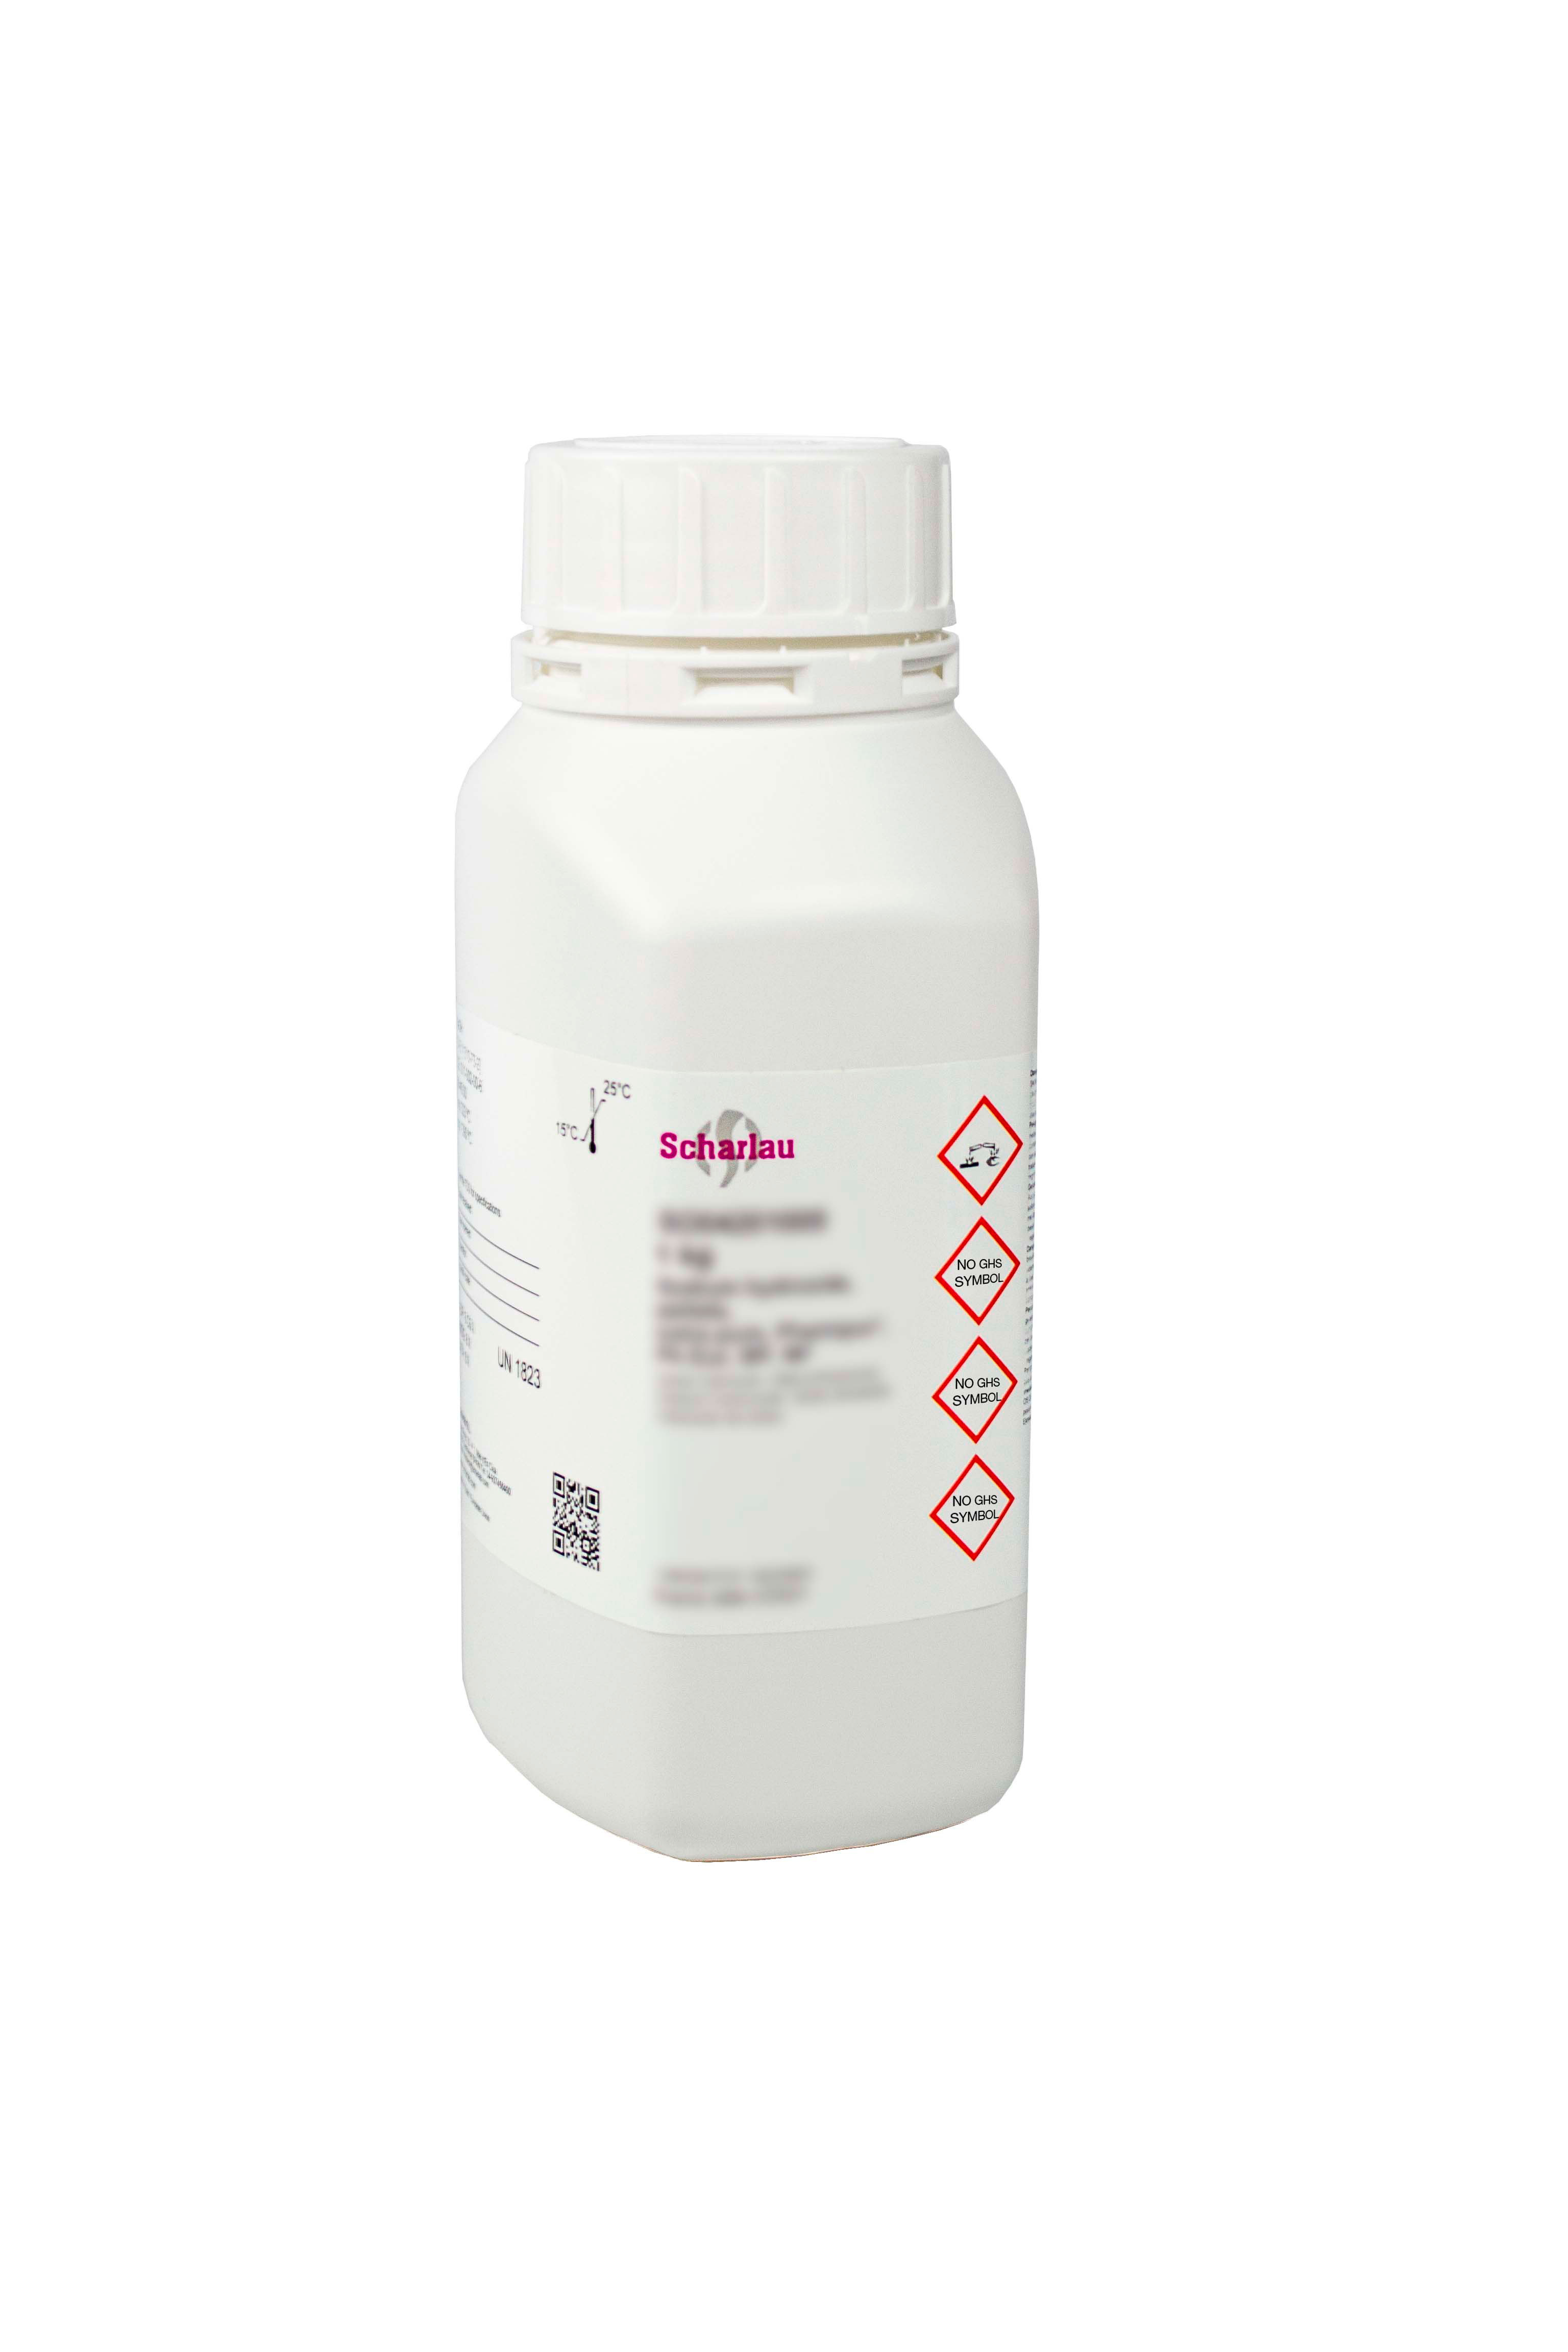 Hyamine® 1622 (Hyamine is a trademark of Rohm and Haas Company), N-Benzyl-N,N-dimethyl-N-[4-(1,1,3,3-tetramethylbutyl)-phenoxyethoxyethyl]ammonium chloride, Benzethonium chloride